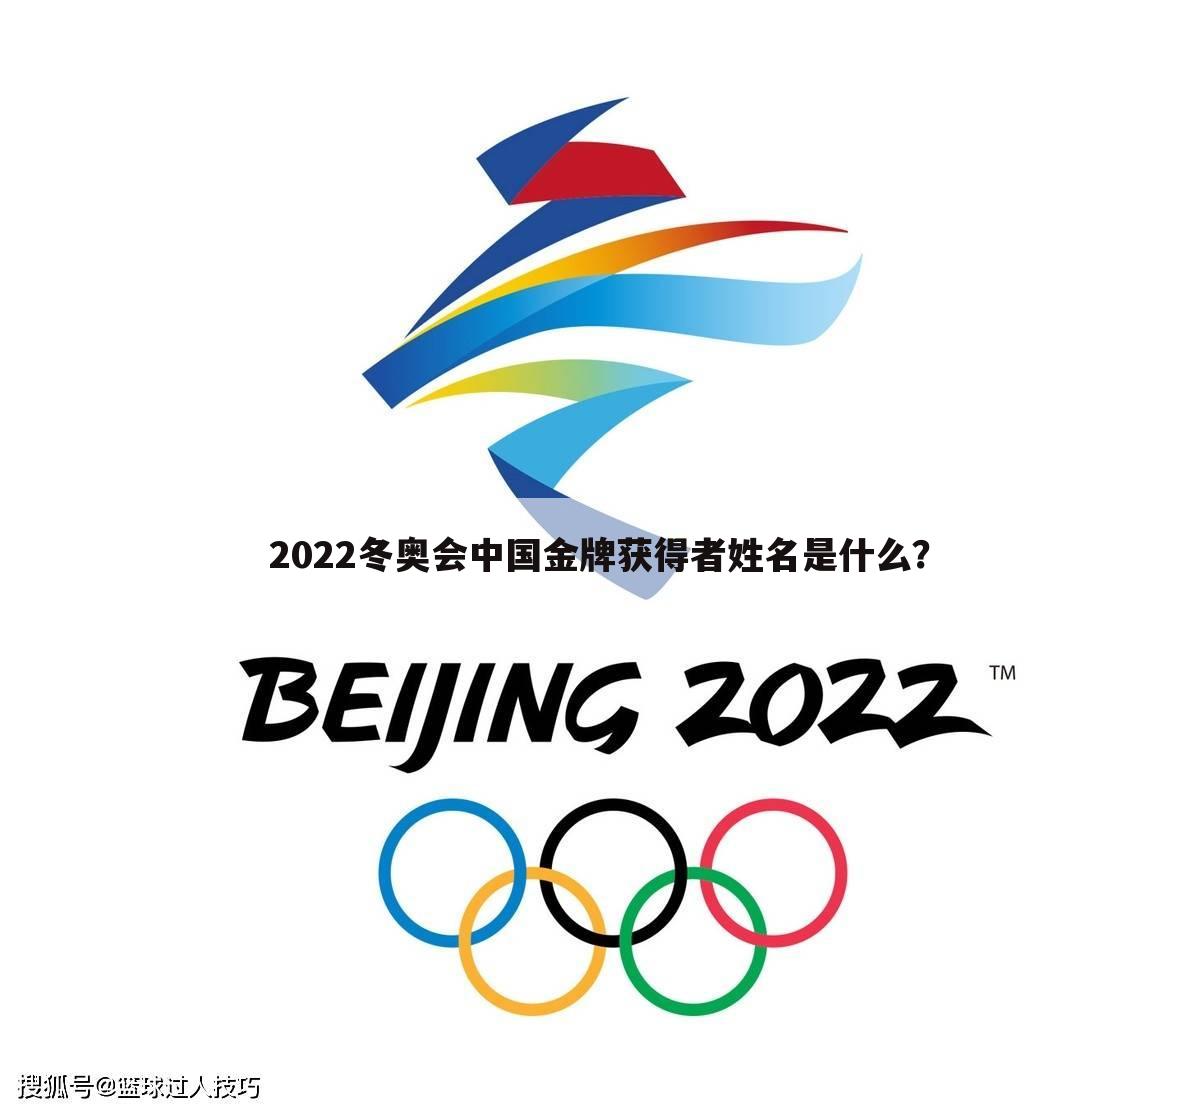 〖冬奥金牌榜2022最新排名〗冬奥金牌榜2022中国得主